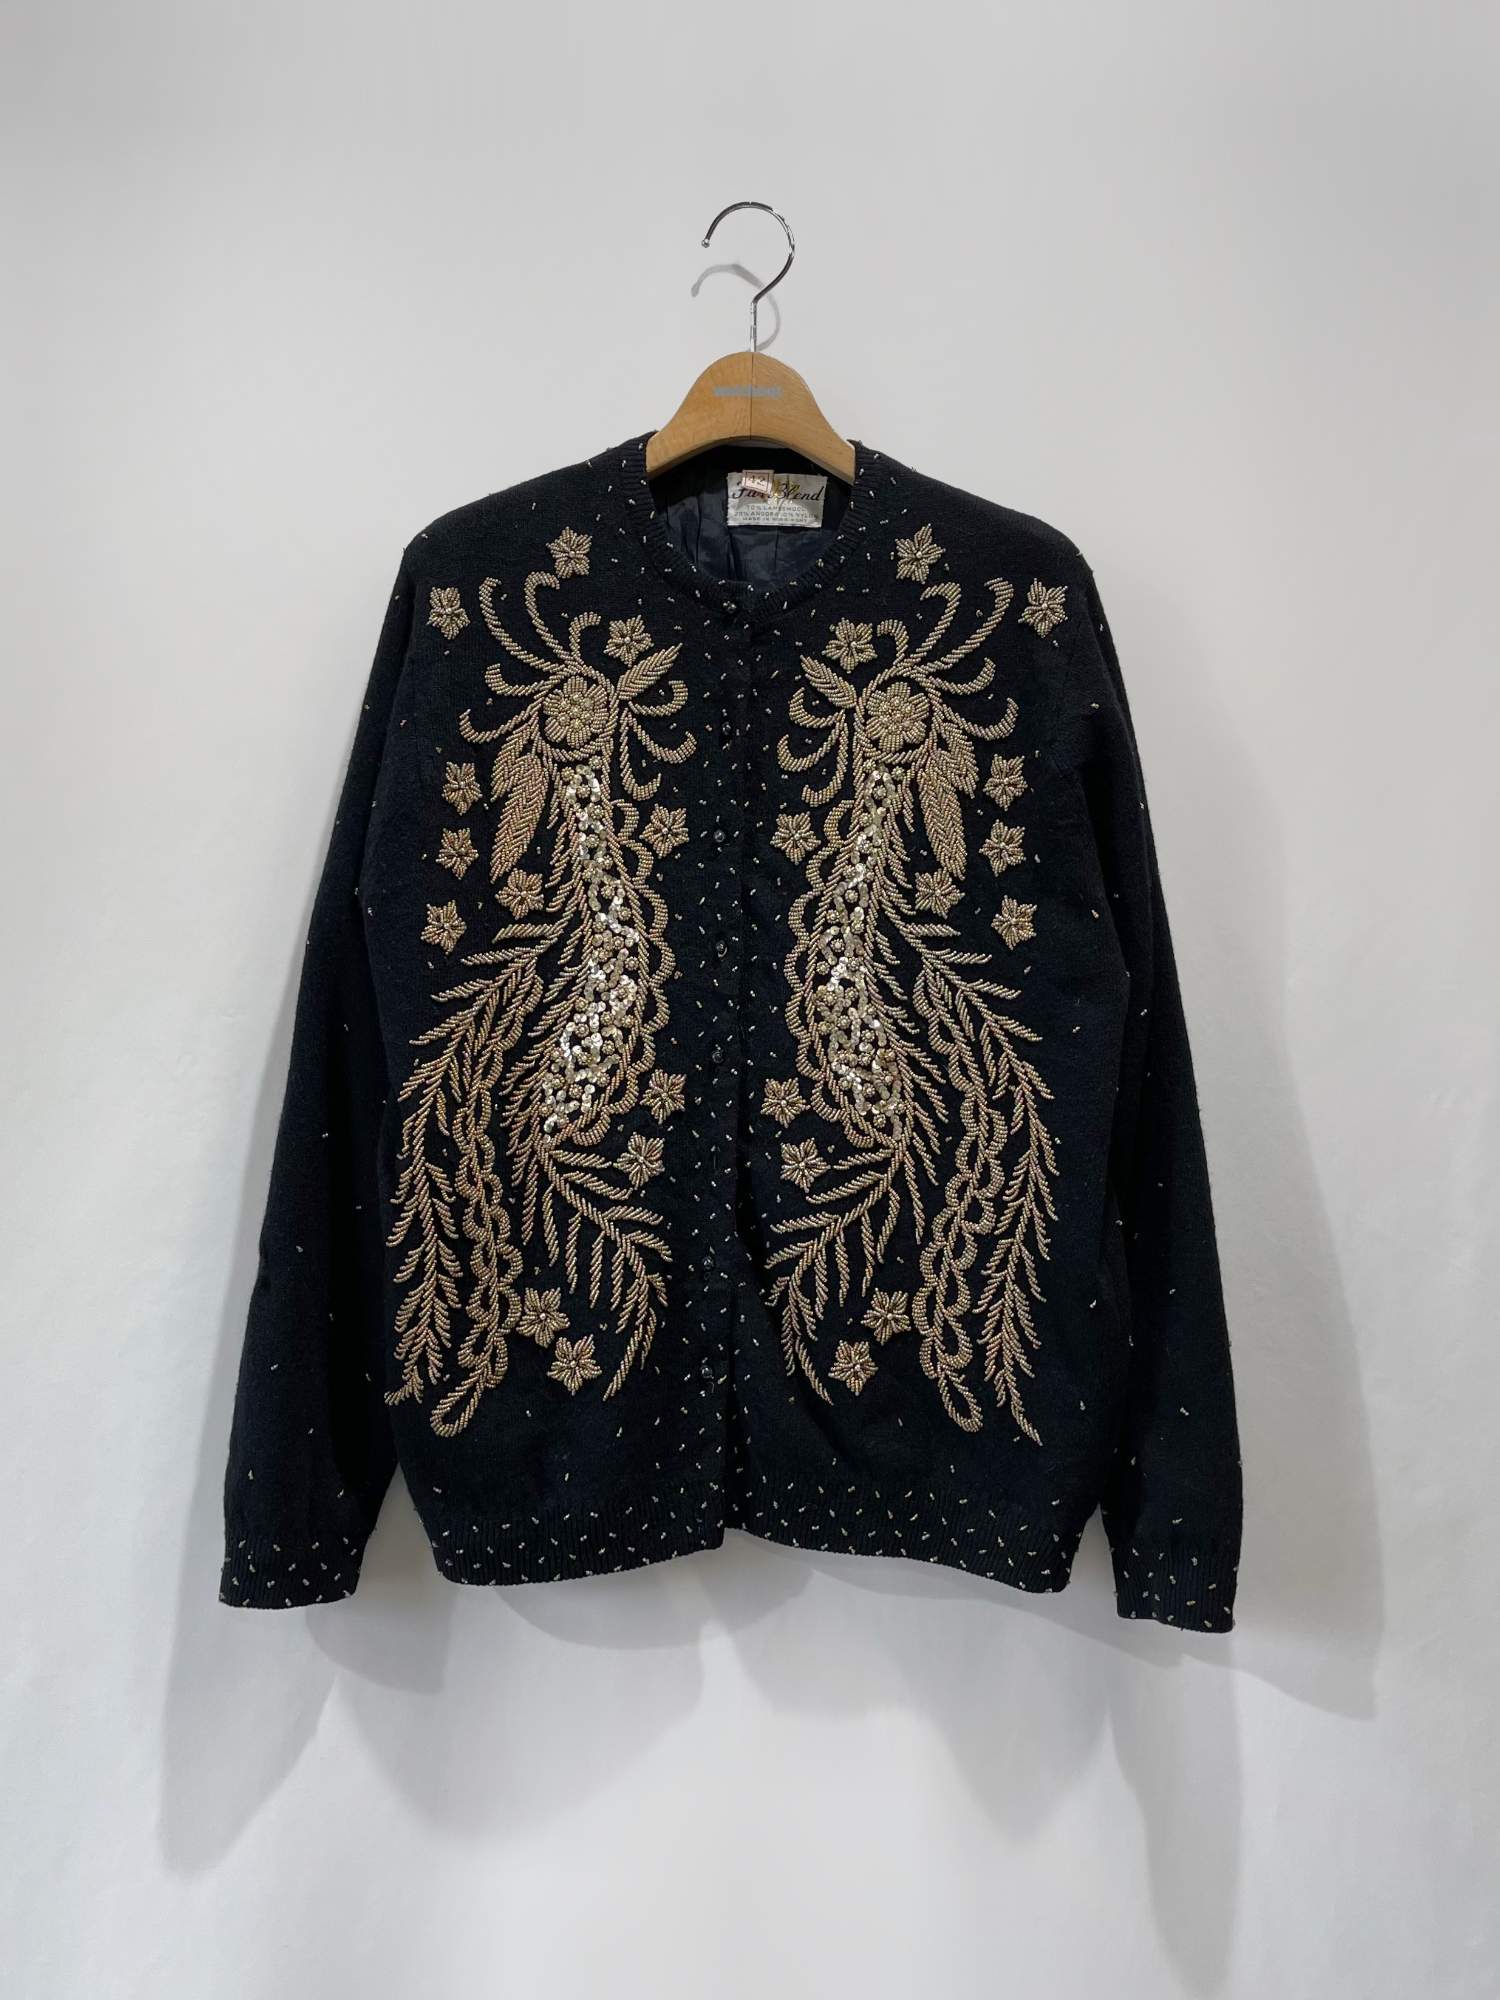 ビーズ刺繍セーター黒ニット/セーター